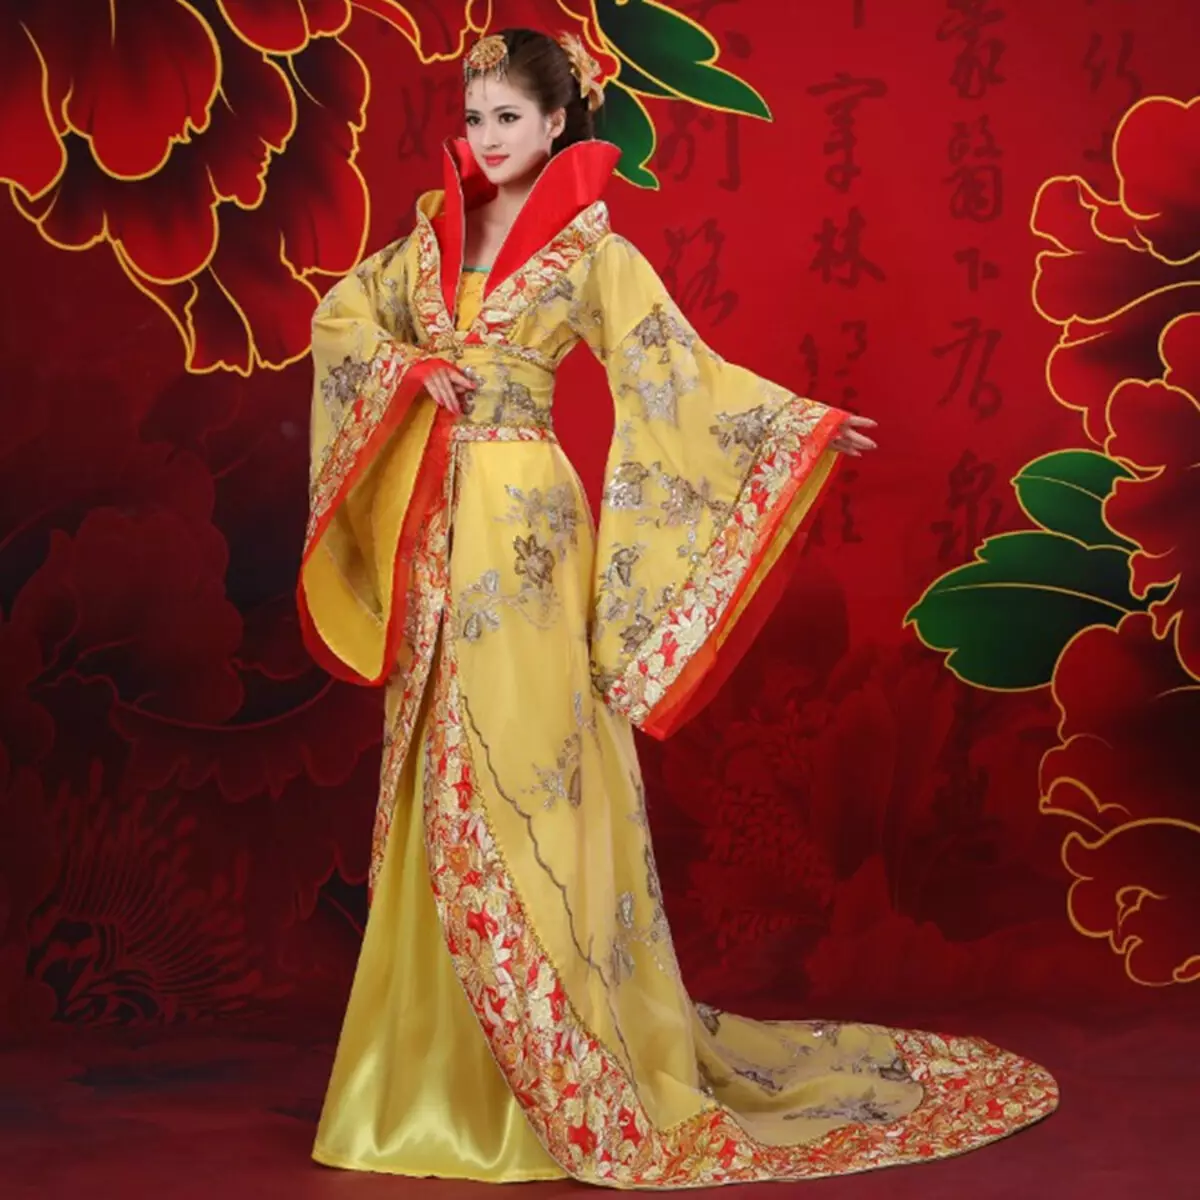 החליפה הלאומית הסינית (73 תמונות): תלבושת נקבה מסורתית של עמי סין, חליפה לילדה 1377_31